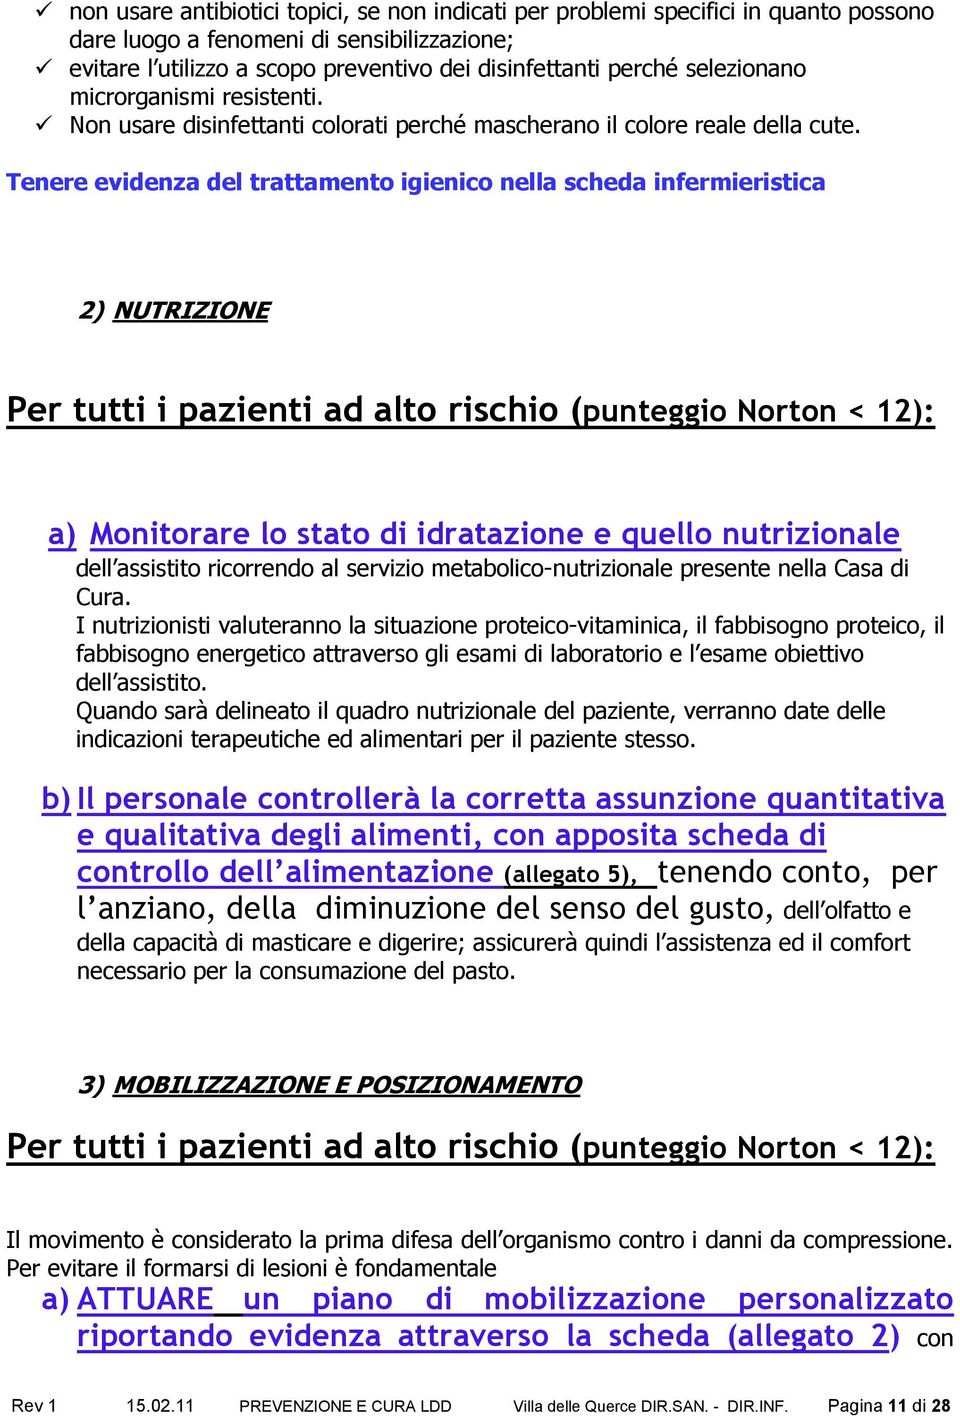 Tenere evidenza del trattamento igienico nella scheda infermieristica 2) NUTRIZIONE Per tutti i pazienti ad alto rischio (punteggio Norton < 12): a) Monitorare lo stato di idratazione e quello